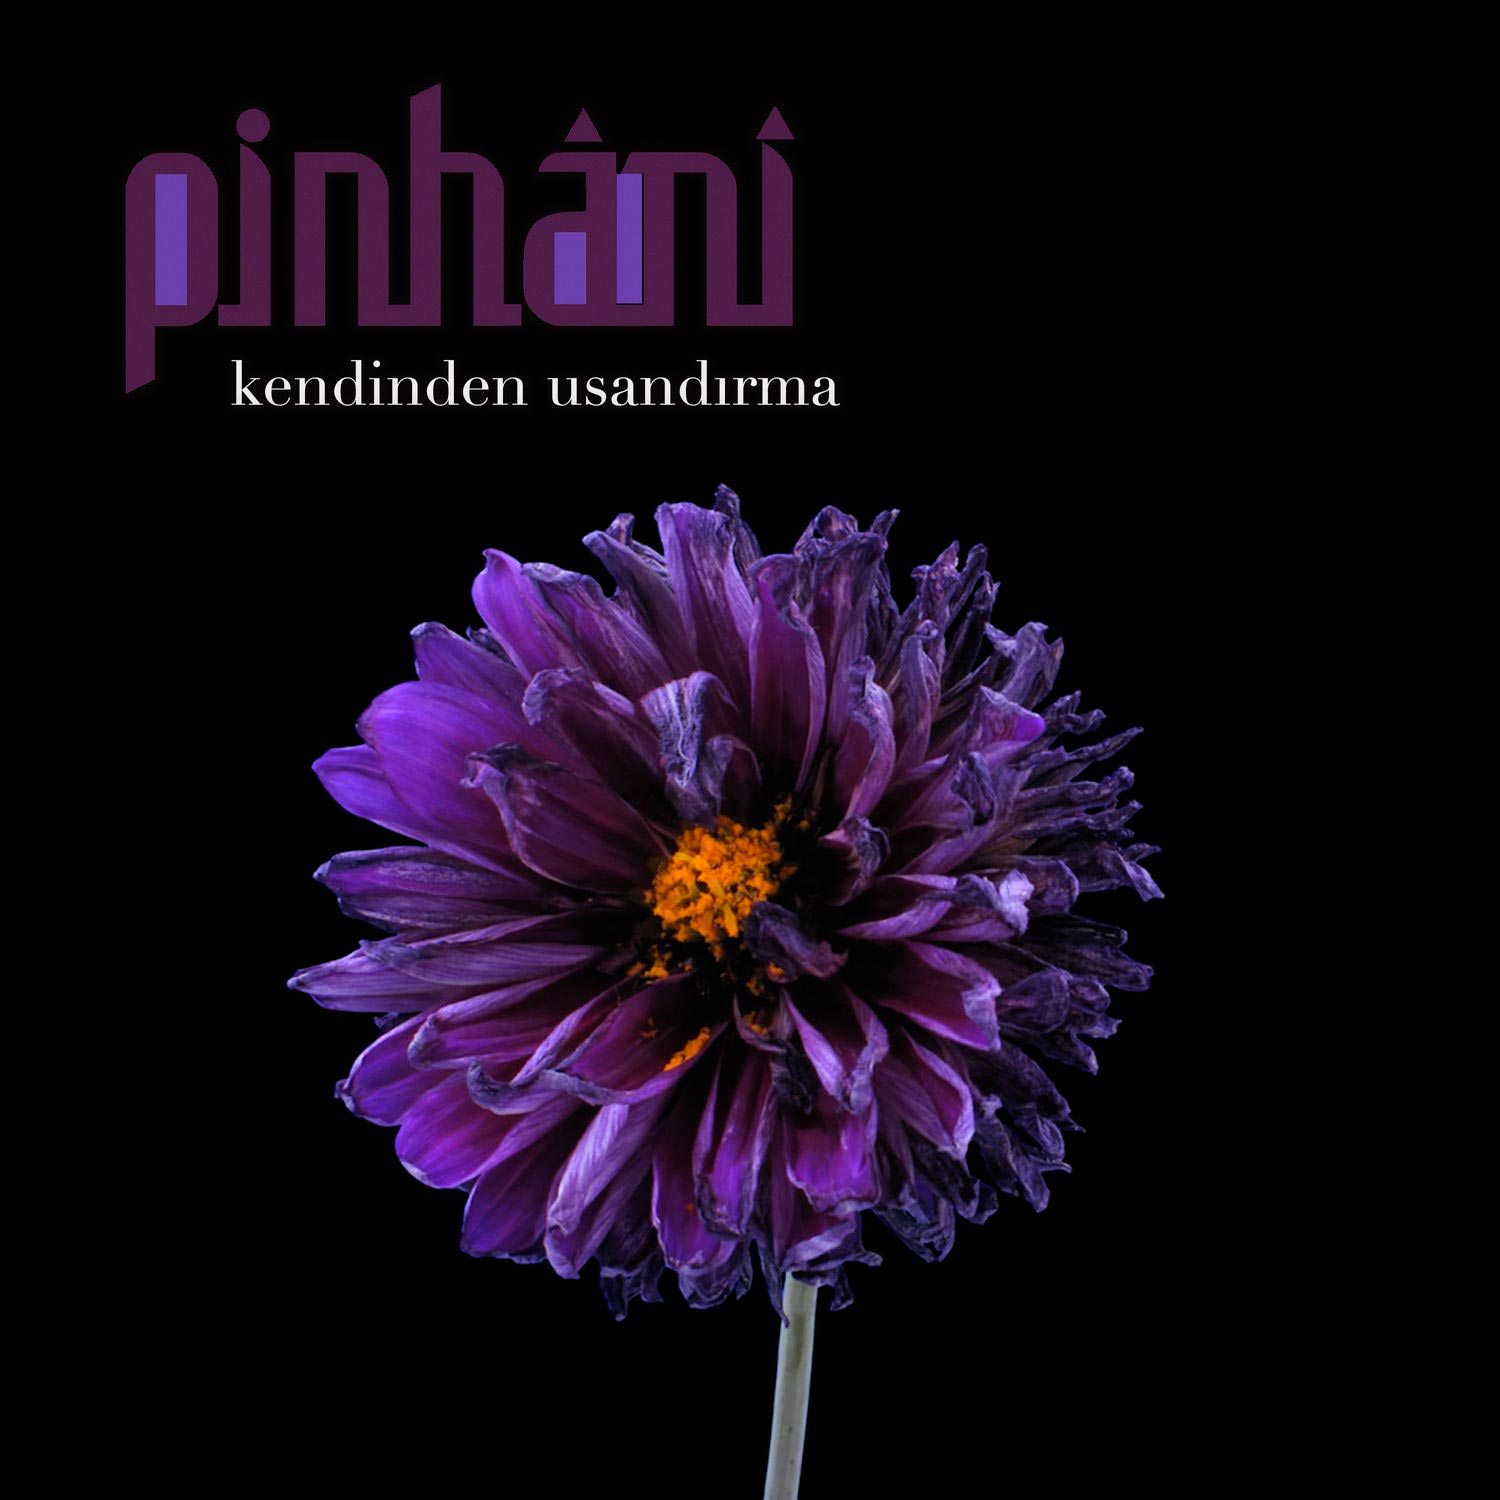 Pinhani - Kendinden Usandırma